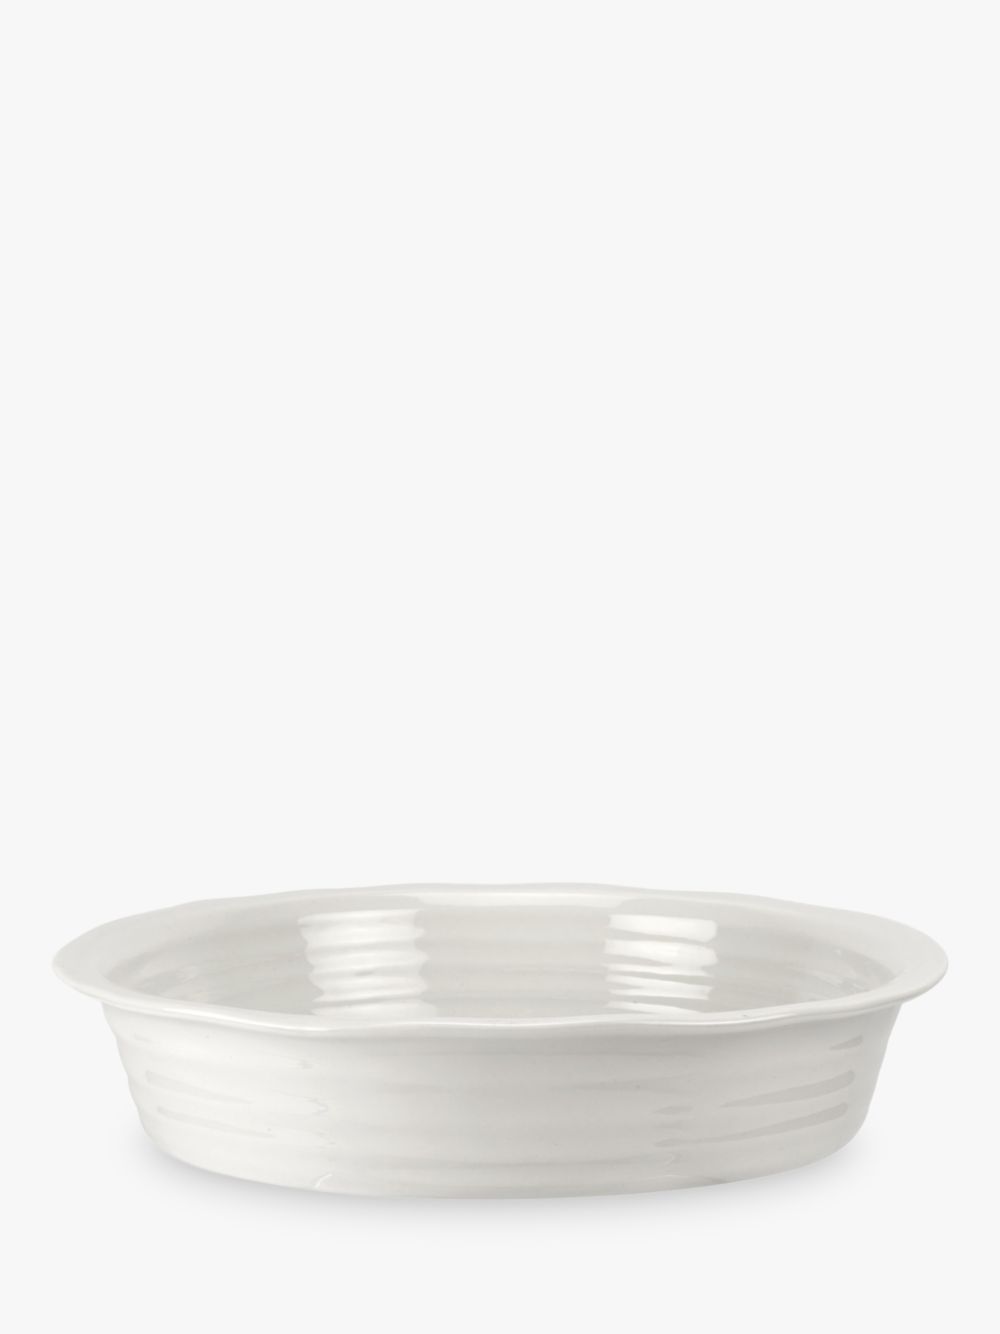 Фарфоровая круглая форма для пирога Sophie Conran for Portmeirion, 27 см, белая